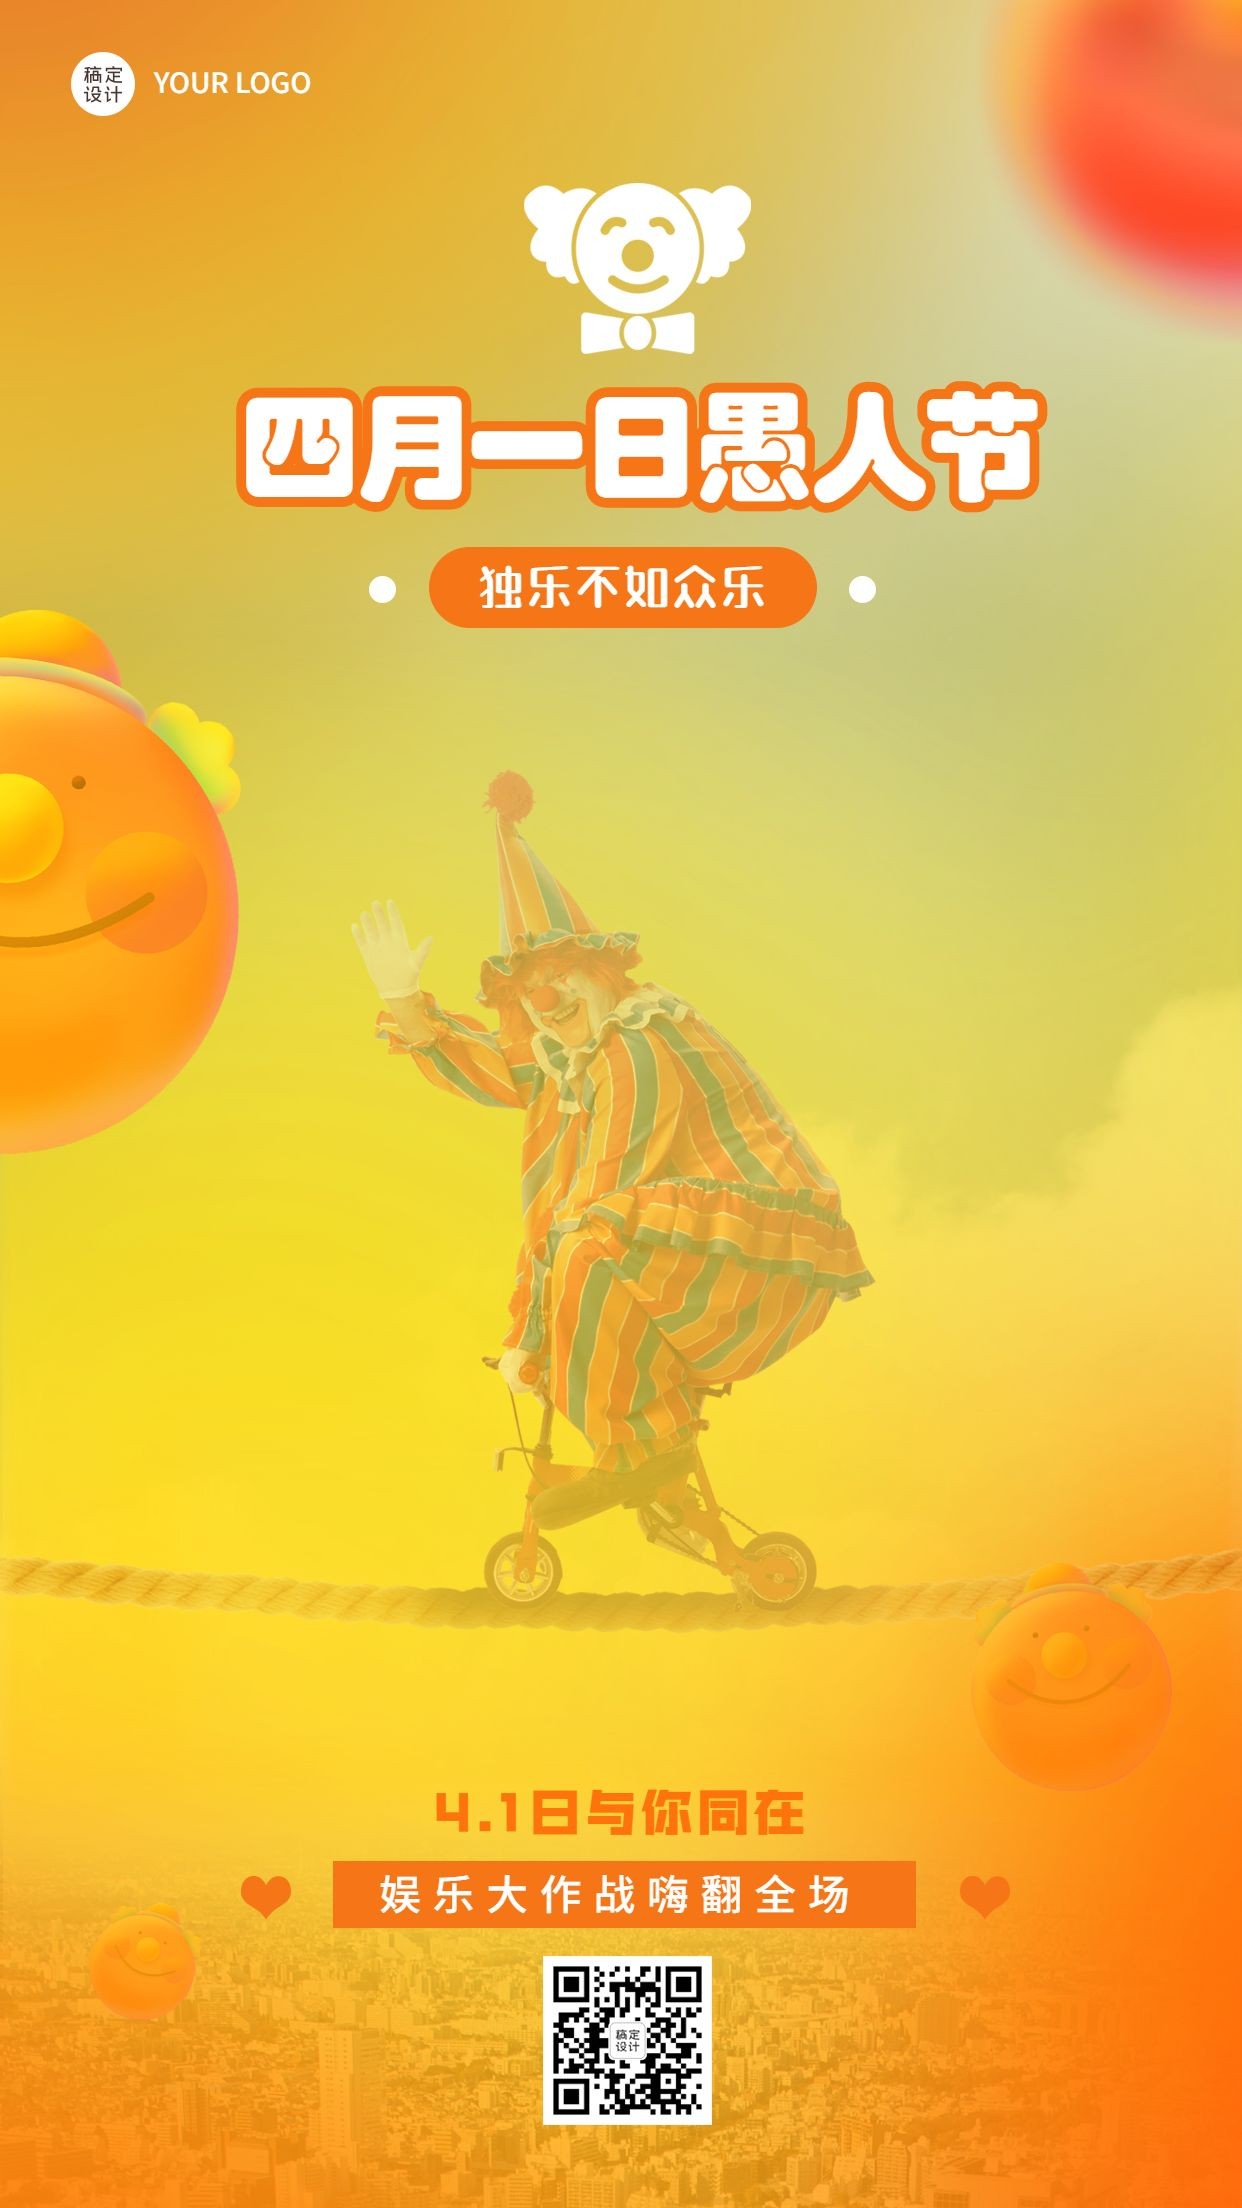 4.1愚人节节日祝福小丑手机海报预览效果